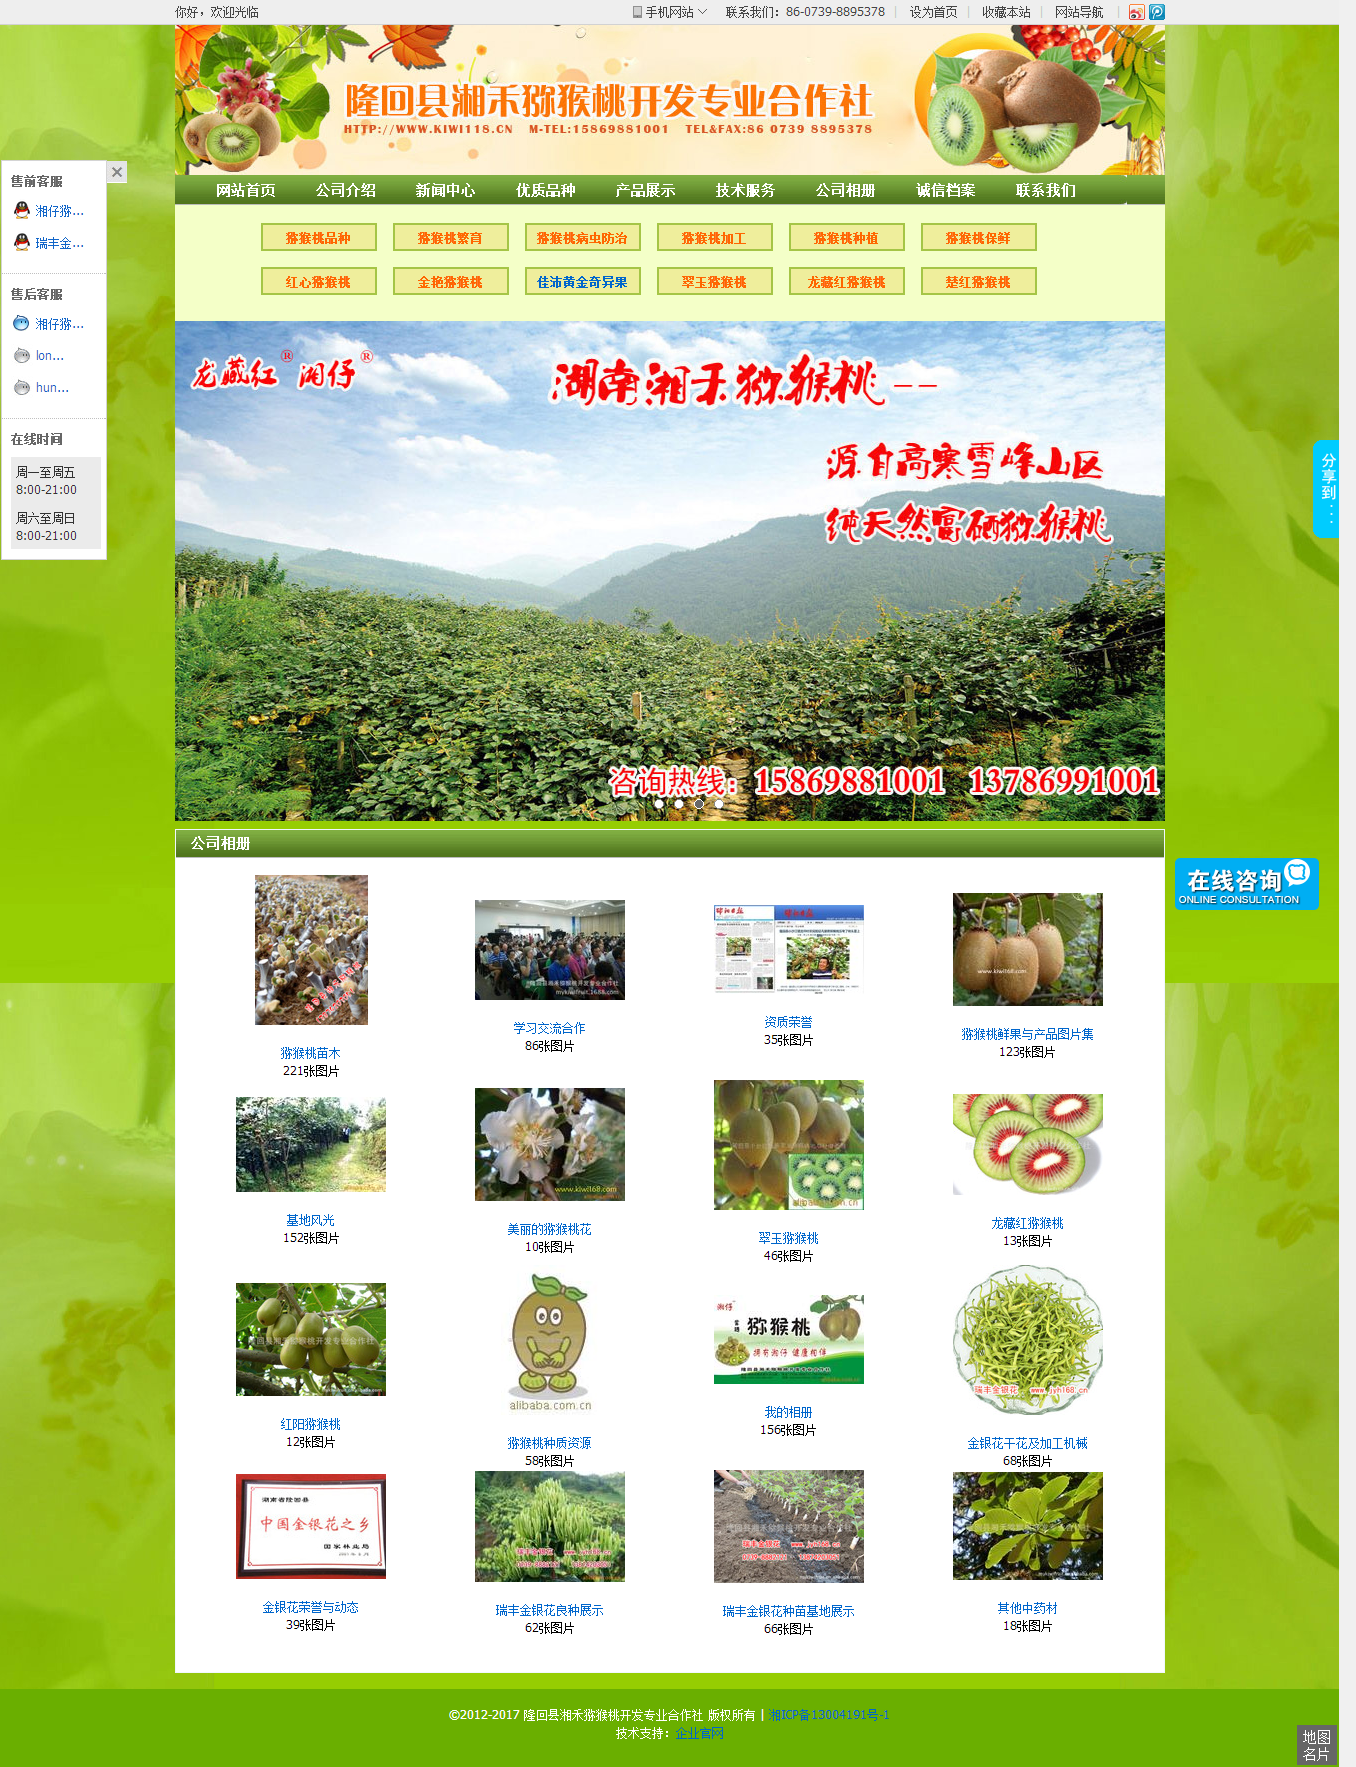 公司相册隆回县湘禾猕猴桃开发专业合作社官网